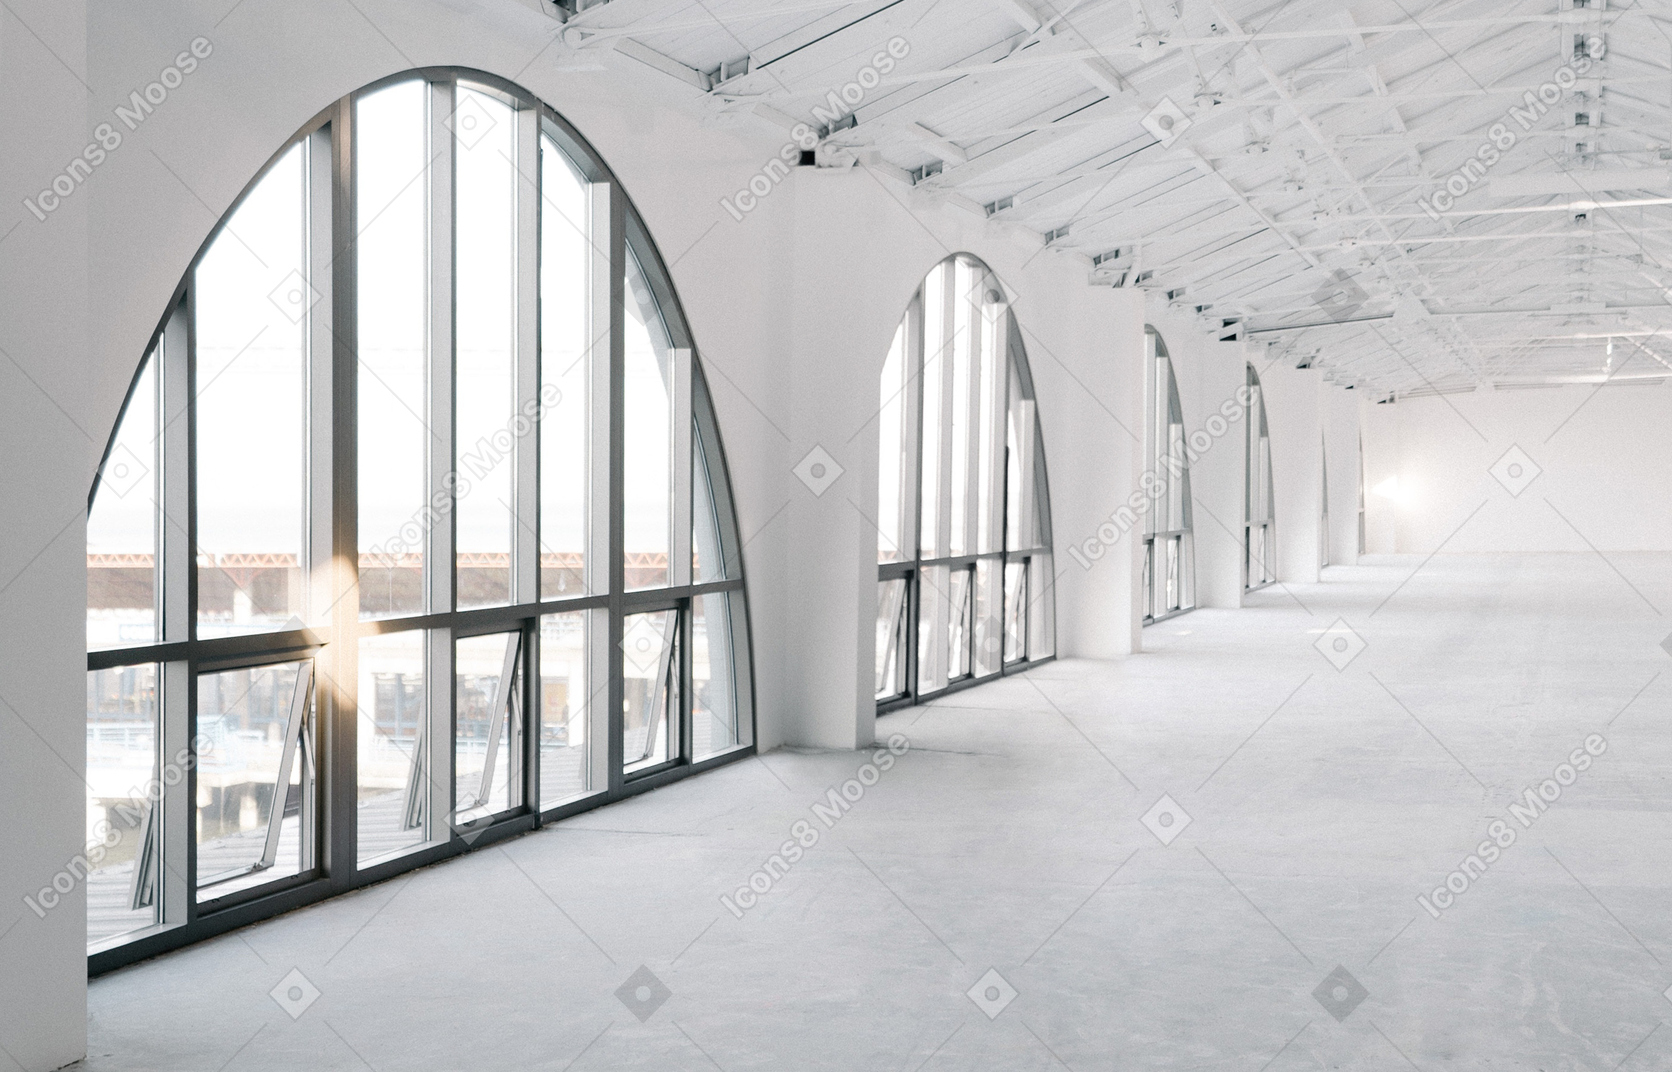 Eine große leere weiße halle mit einer reihe großer bogenfenster